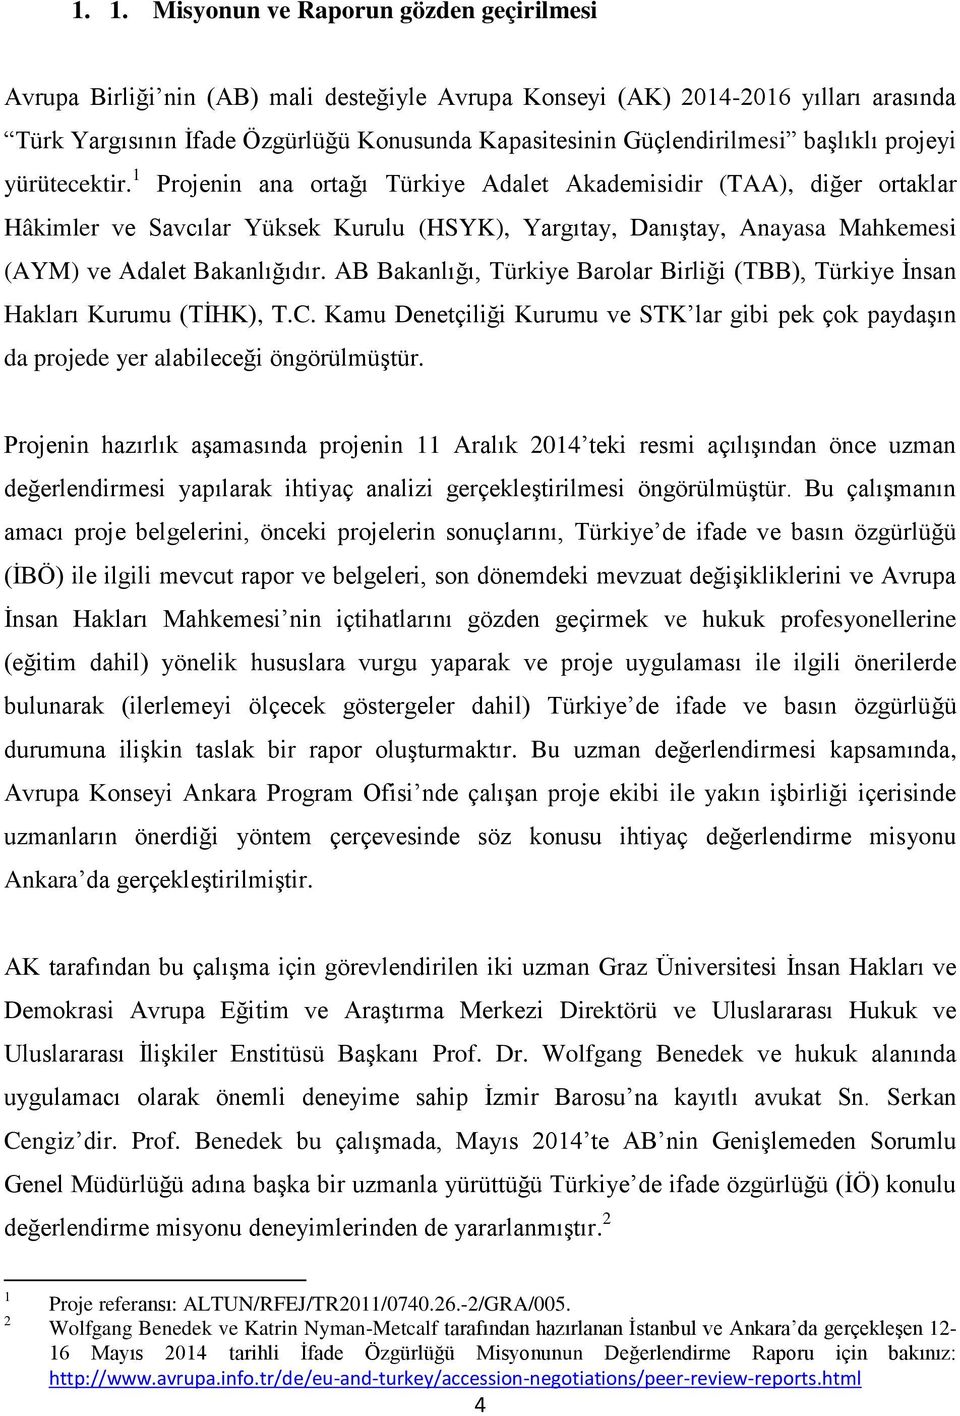 1 Projenin ana ortağı Türkiye Adalet Akademisidir (TAA), diğer ortaklar Hâkimler ve Savcılar Yüksek Kurulu (HSYK), Yargıtay, Danıştay, Anayasa Mahkemesi (AYM) ve Adalet Bakanlığıdır.